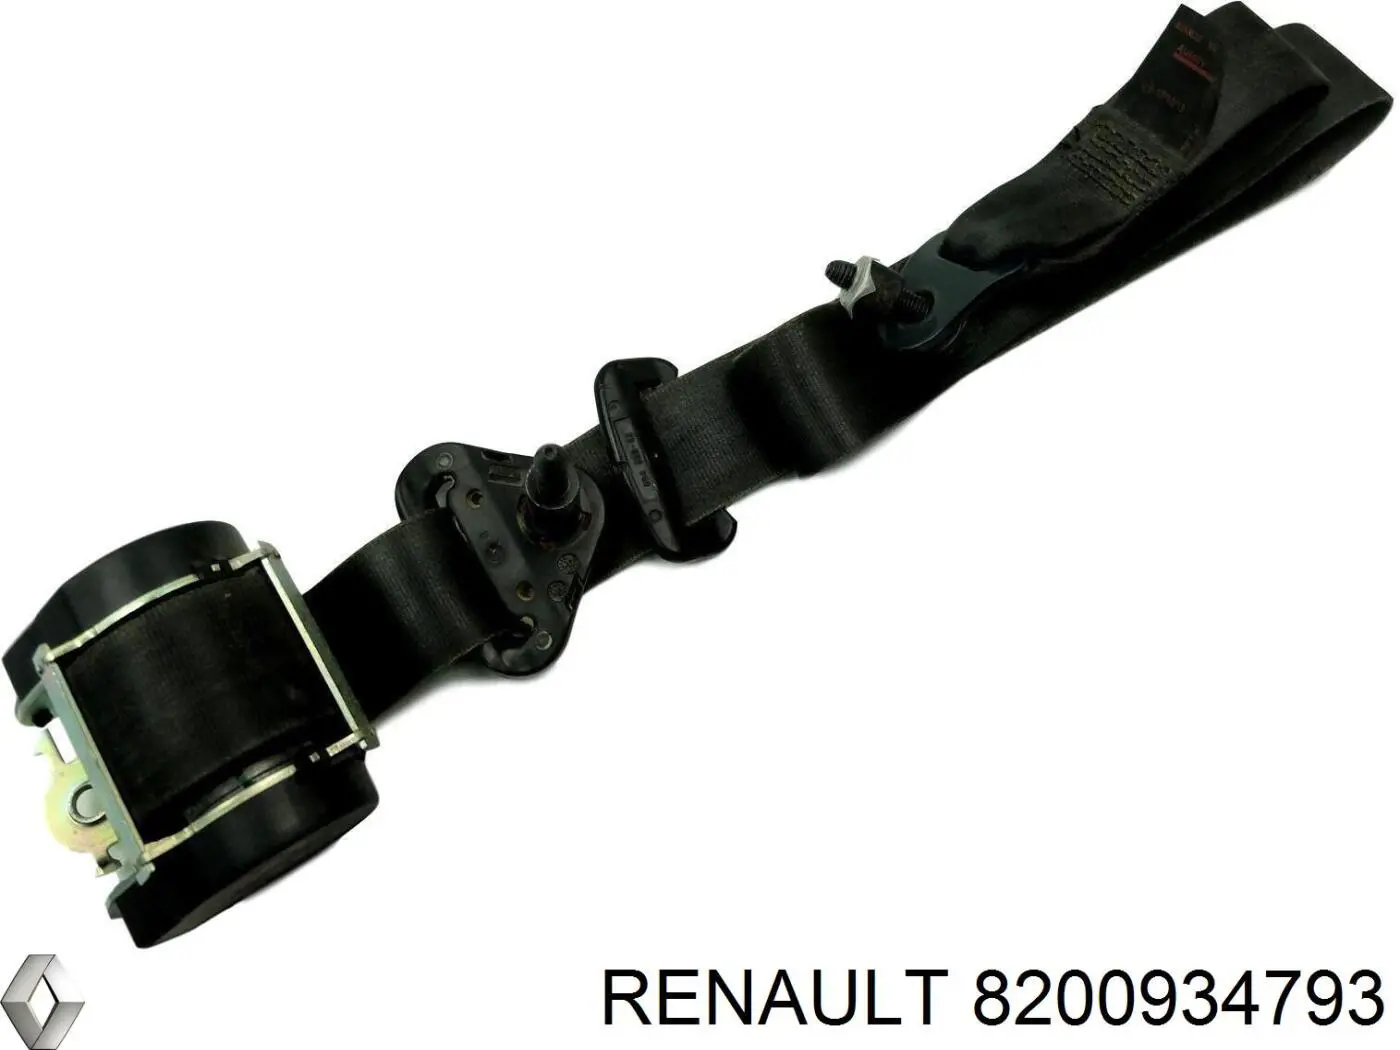 8200934793 Renault (RVI) cinturón de seguridad delantero izquierda